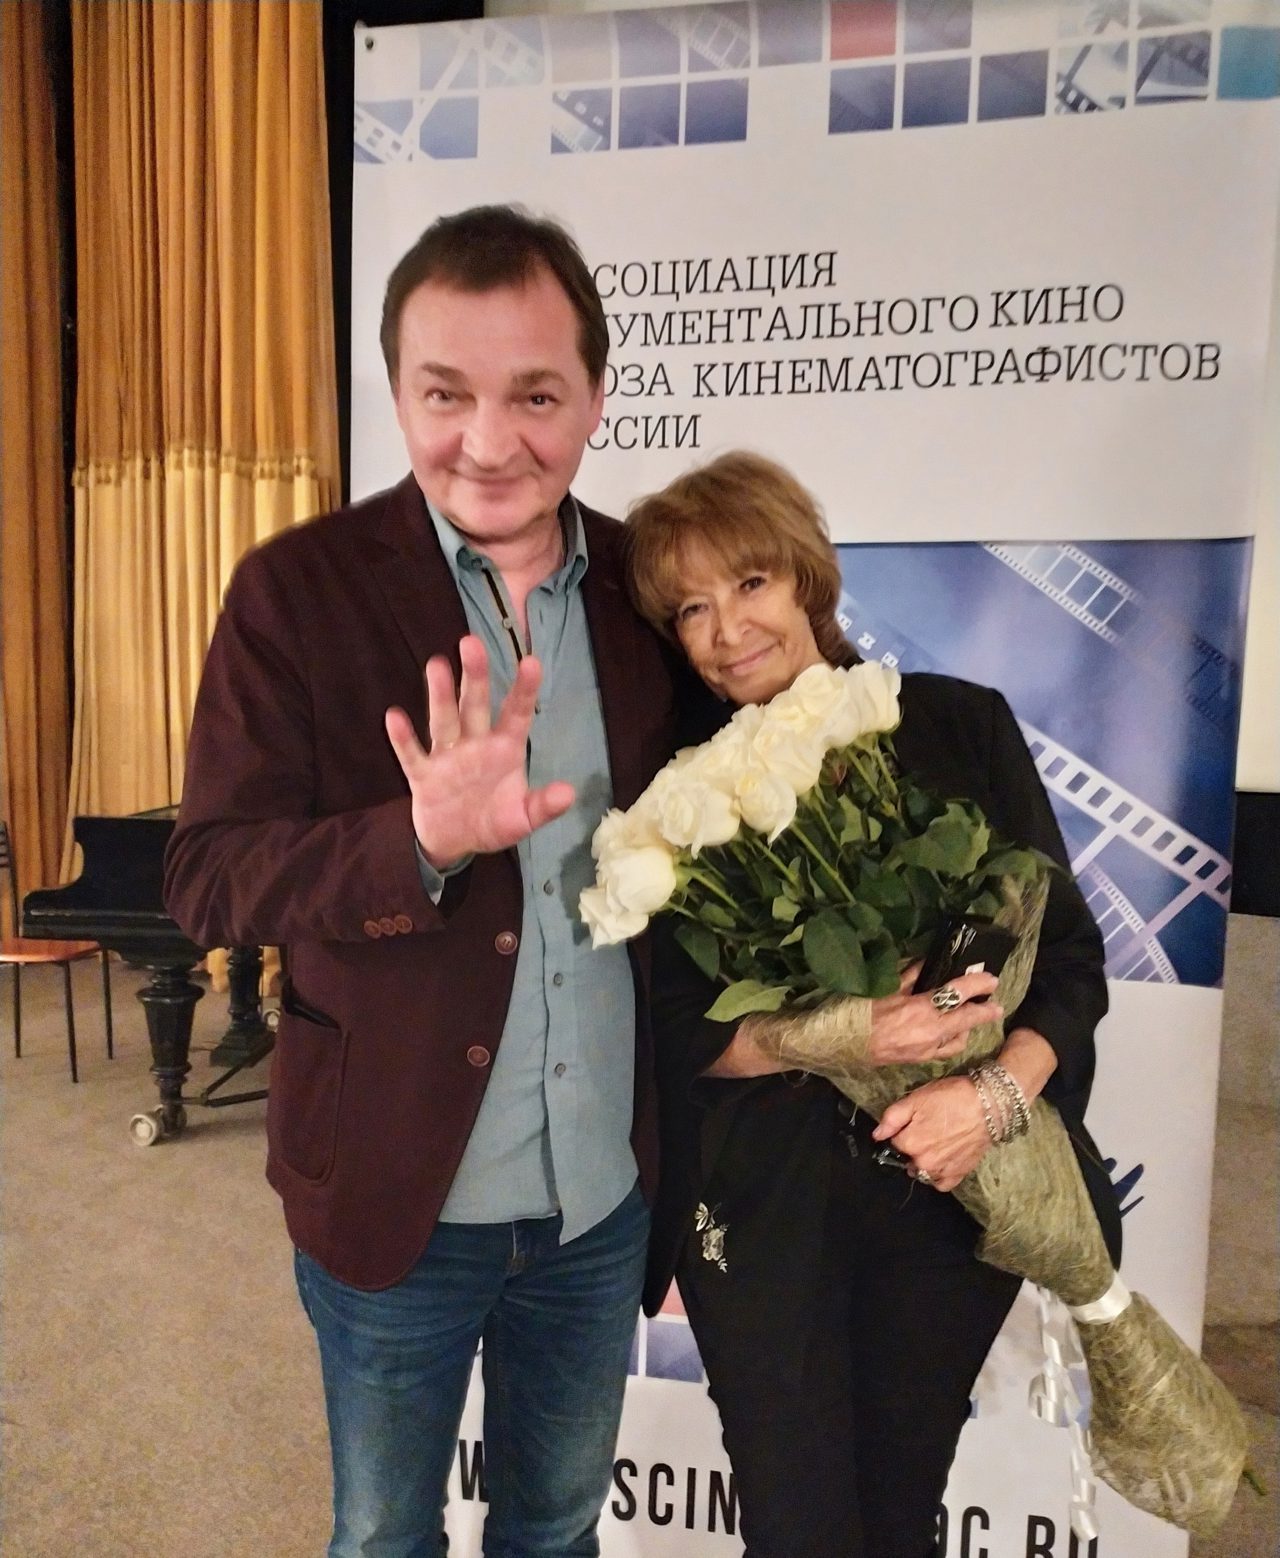 Ассоциация документального кино провела показ фильма режиссера Павла Медведева «Возвращение»